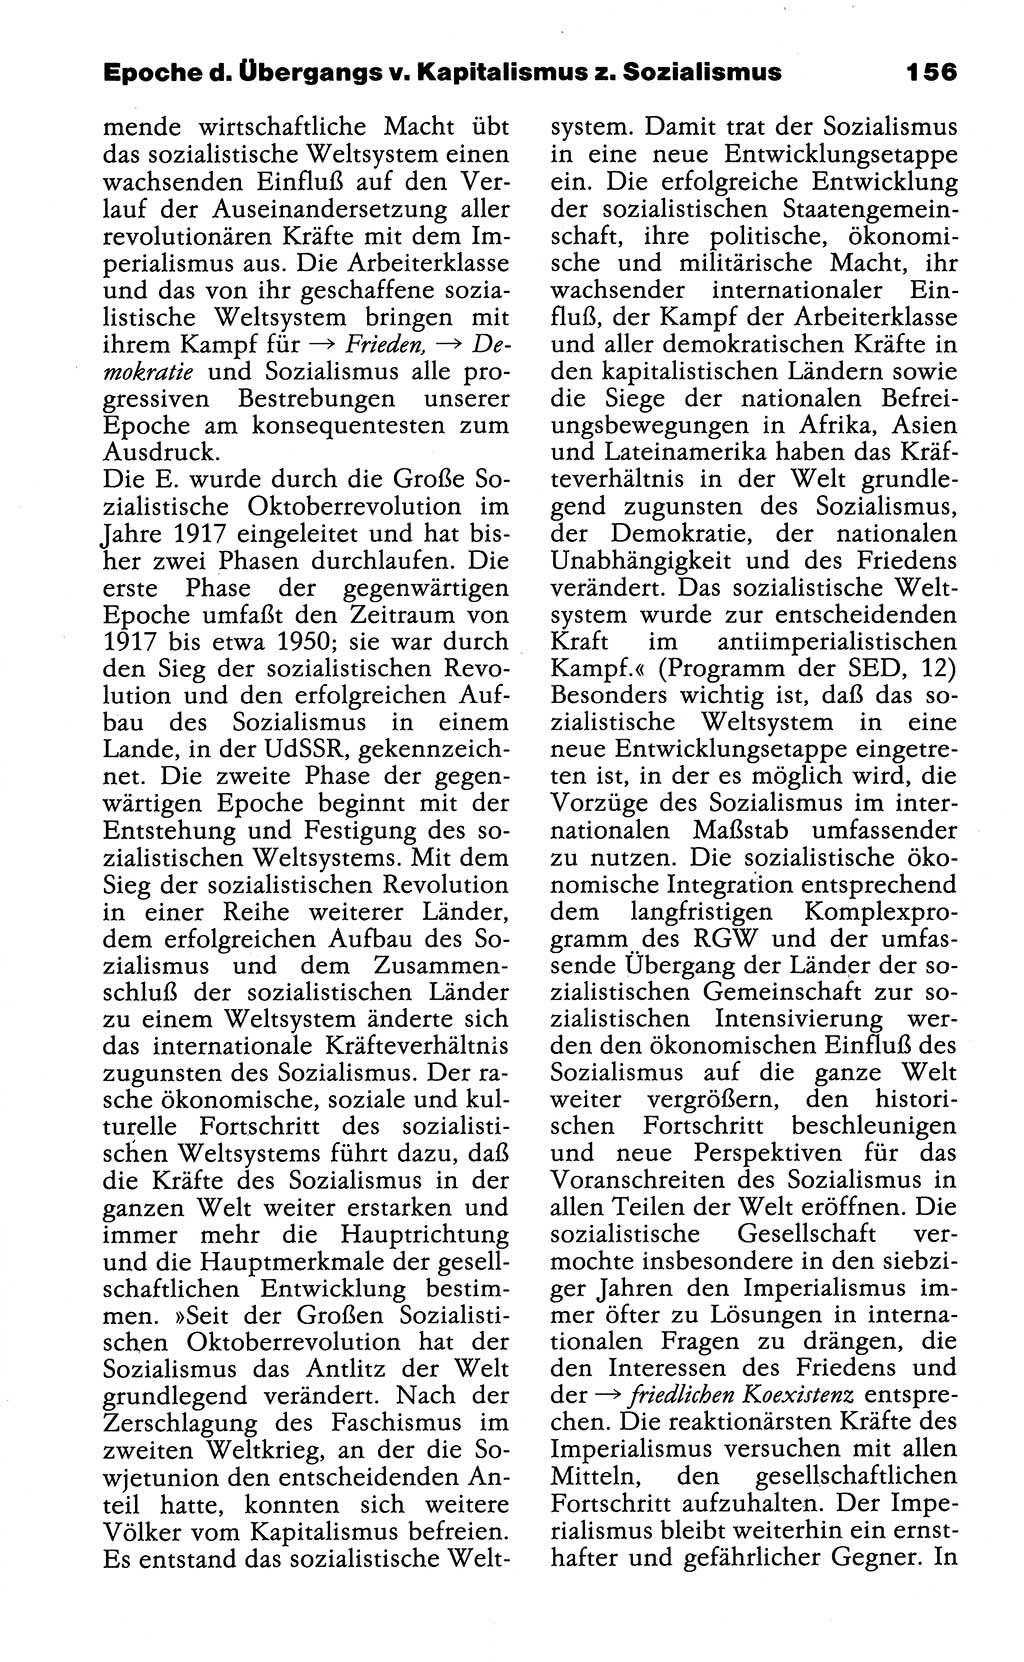 Wörterbuch der marxistisch-leninistischen Philosophie [Deutsche Demokratische Republik (DDR)] 1985, Seite 156 (Wb. ML Phil. DDR 1985, S. 156)